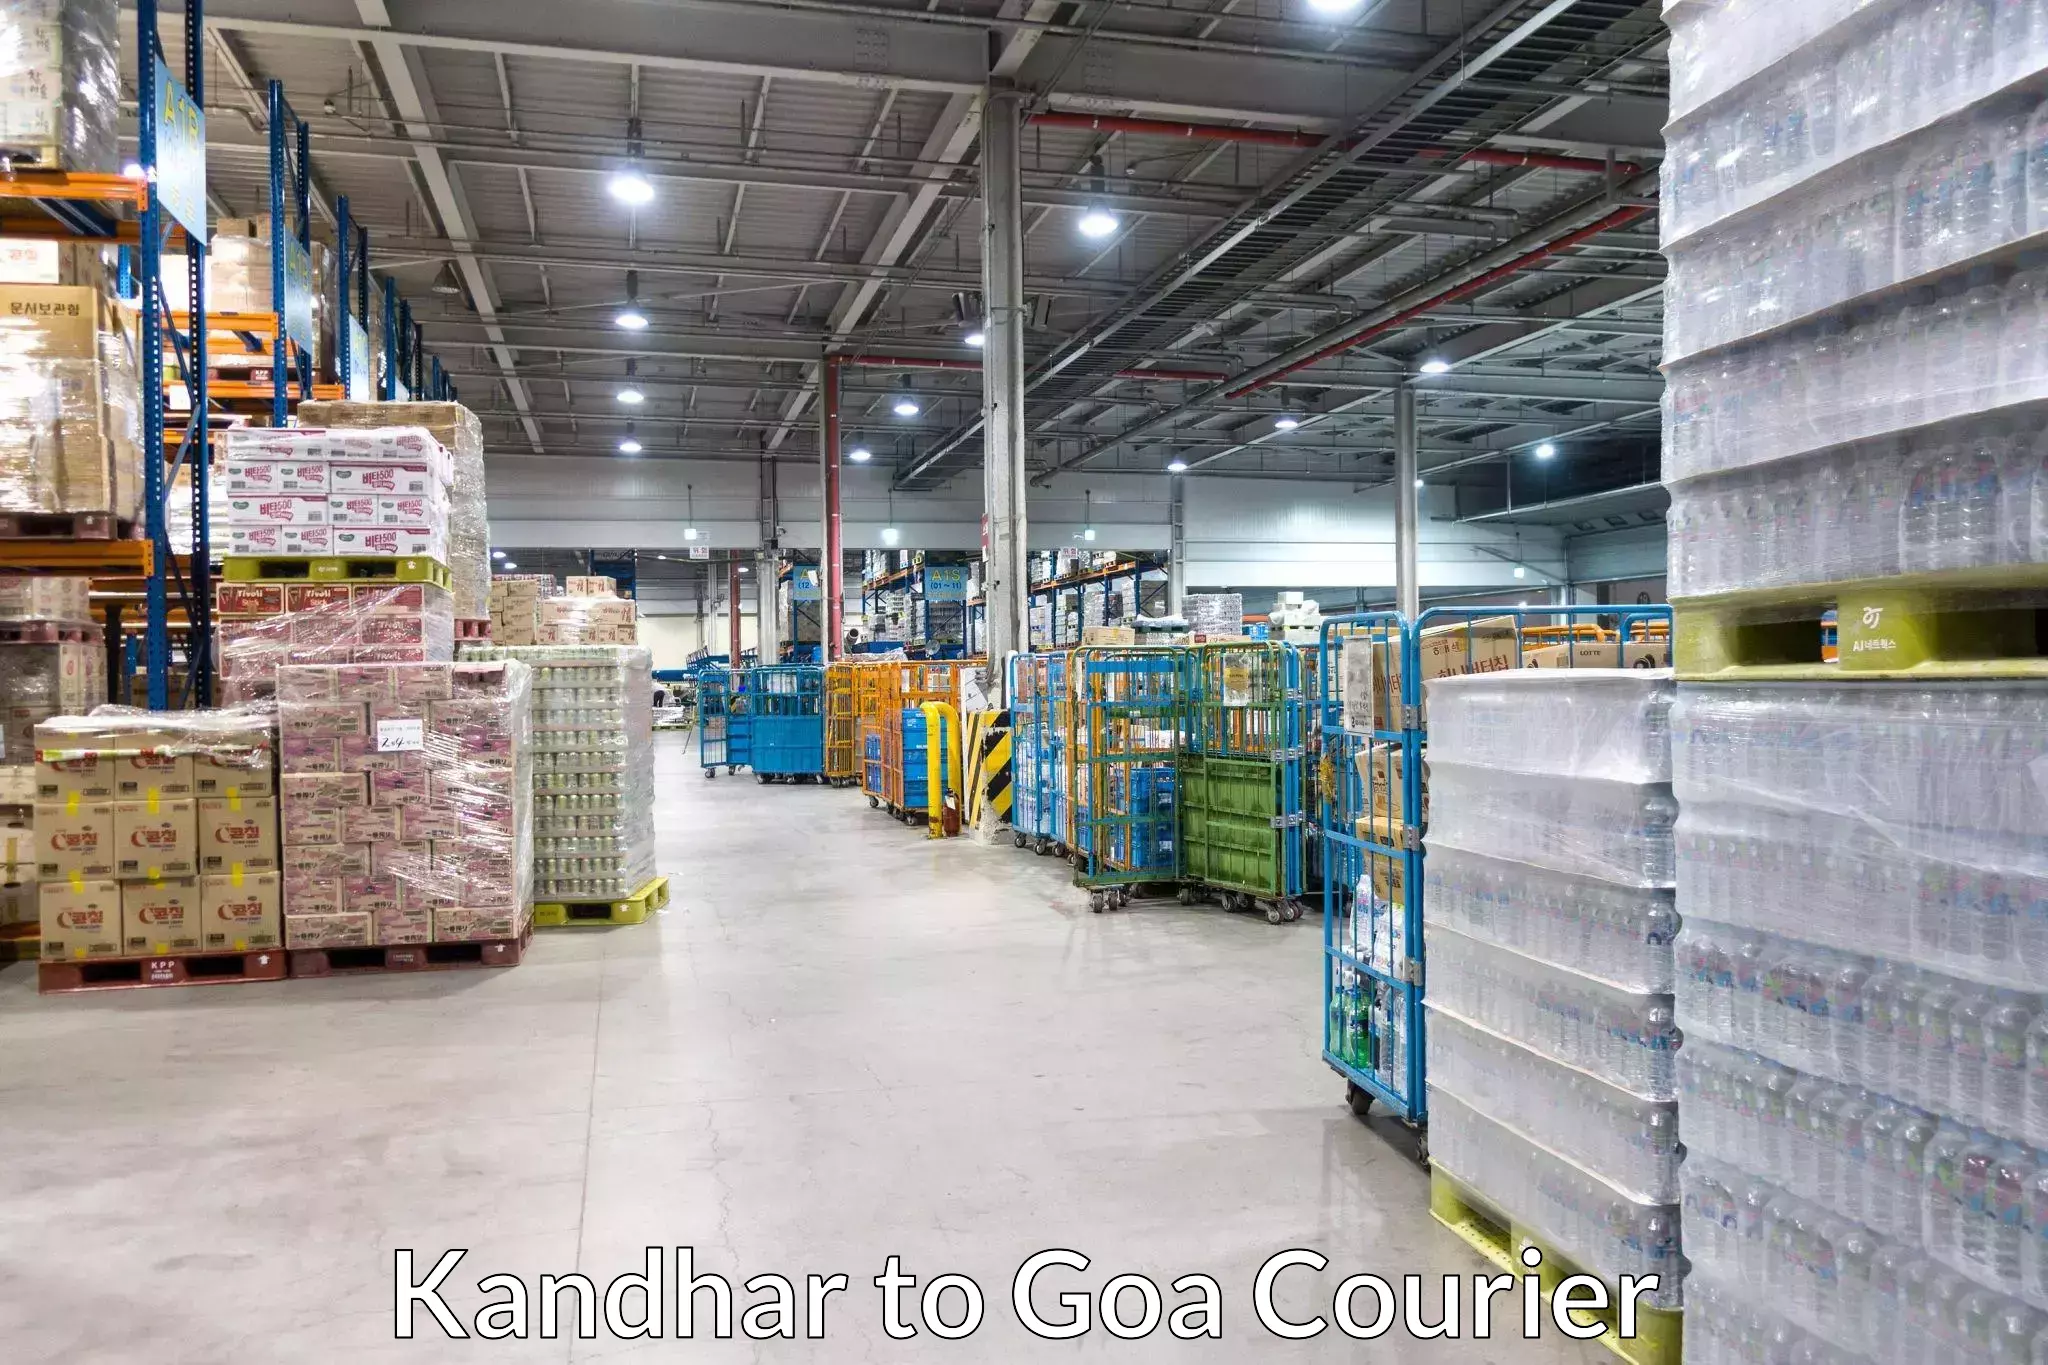 Seamless shipping service Kandhar to Ponda